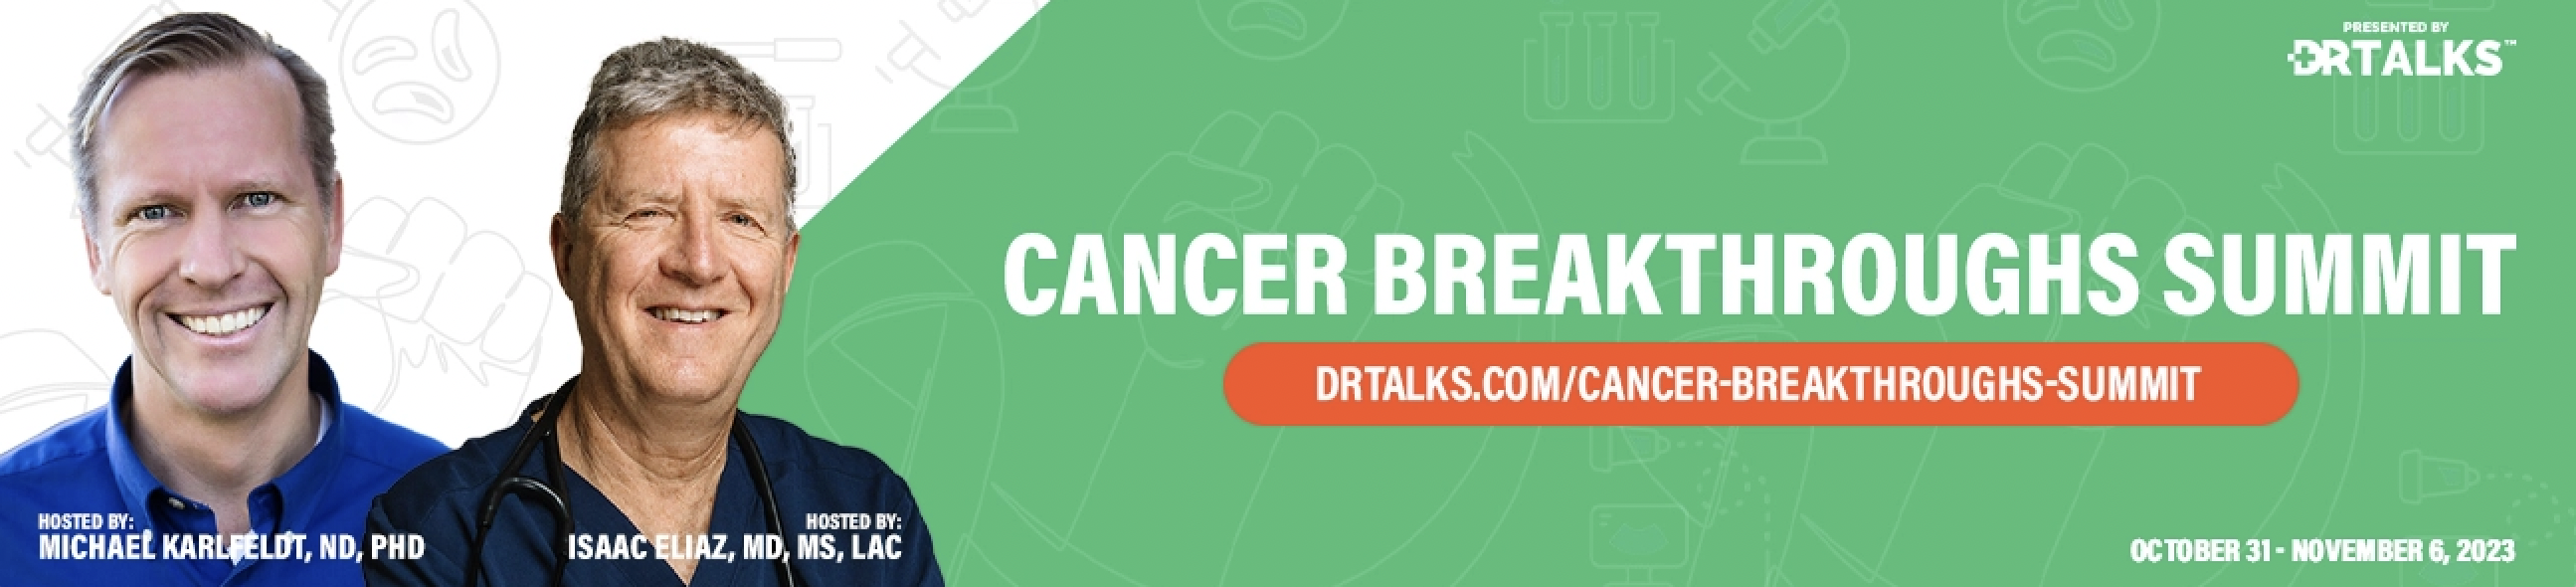 Cancer Breakthroughs Summit